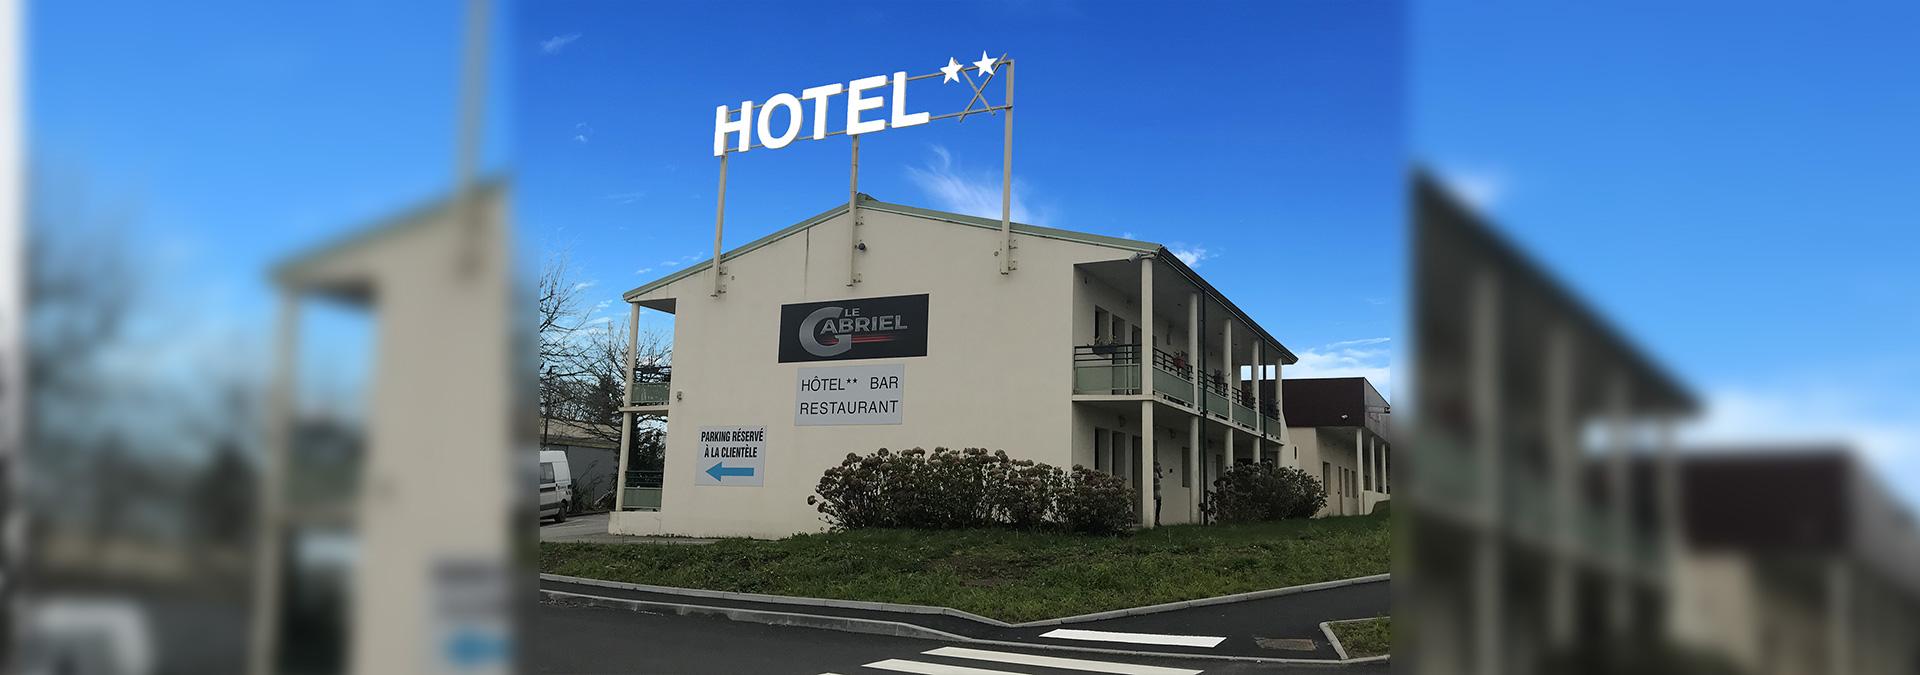 Hotel Caudan